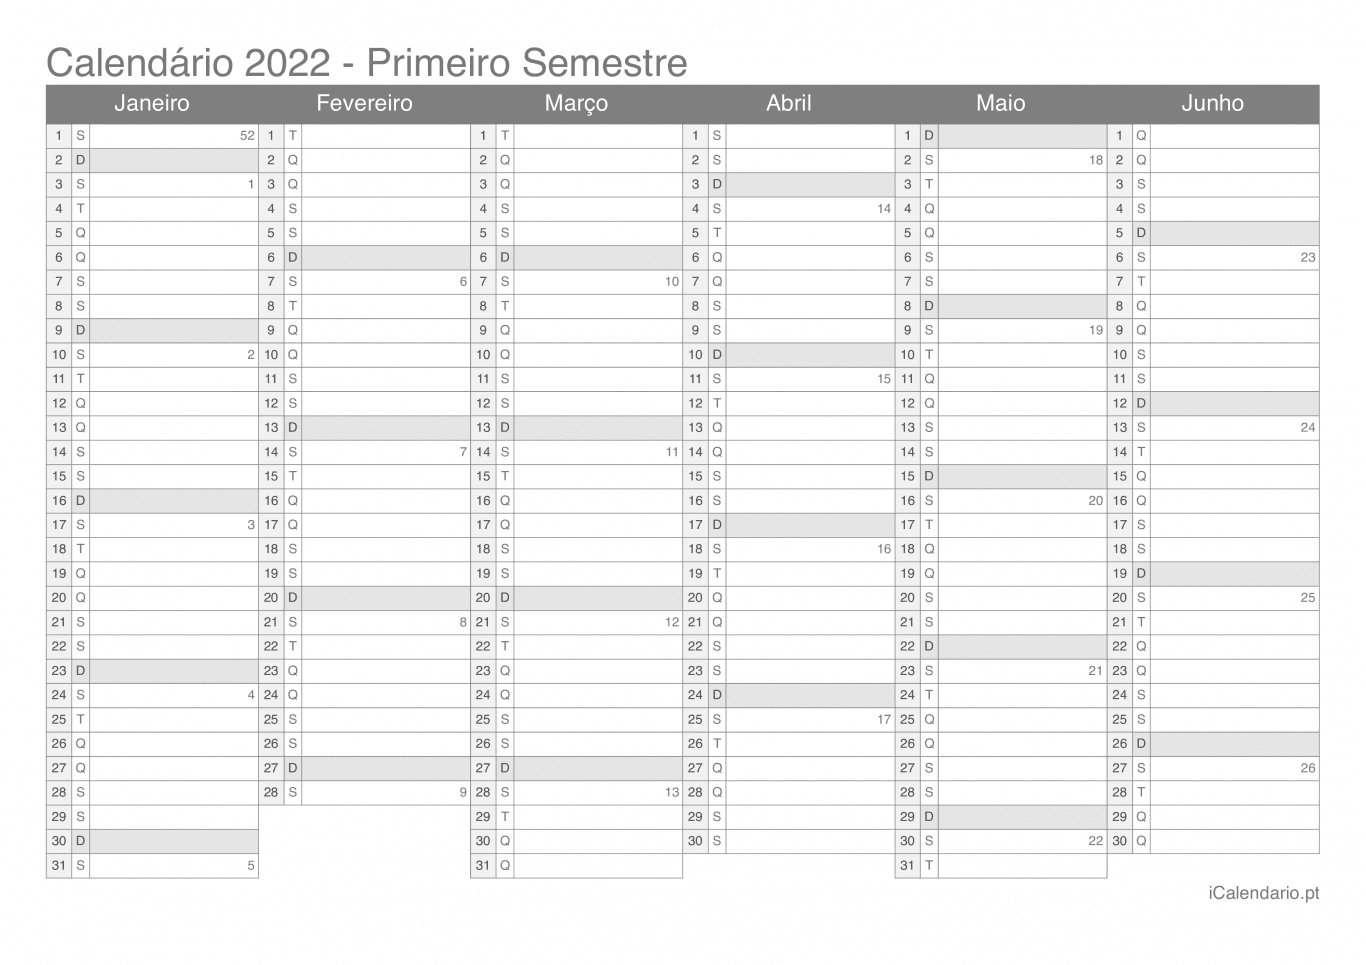 Calendário por semestre com números da semana 2022